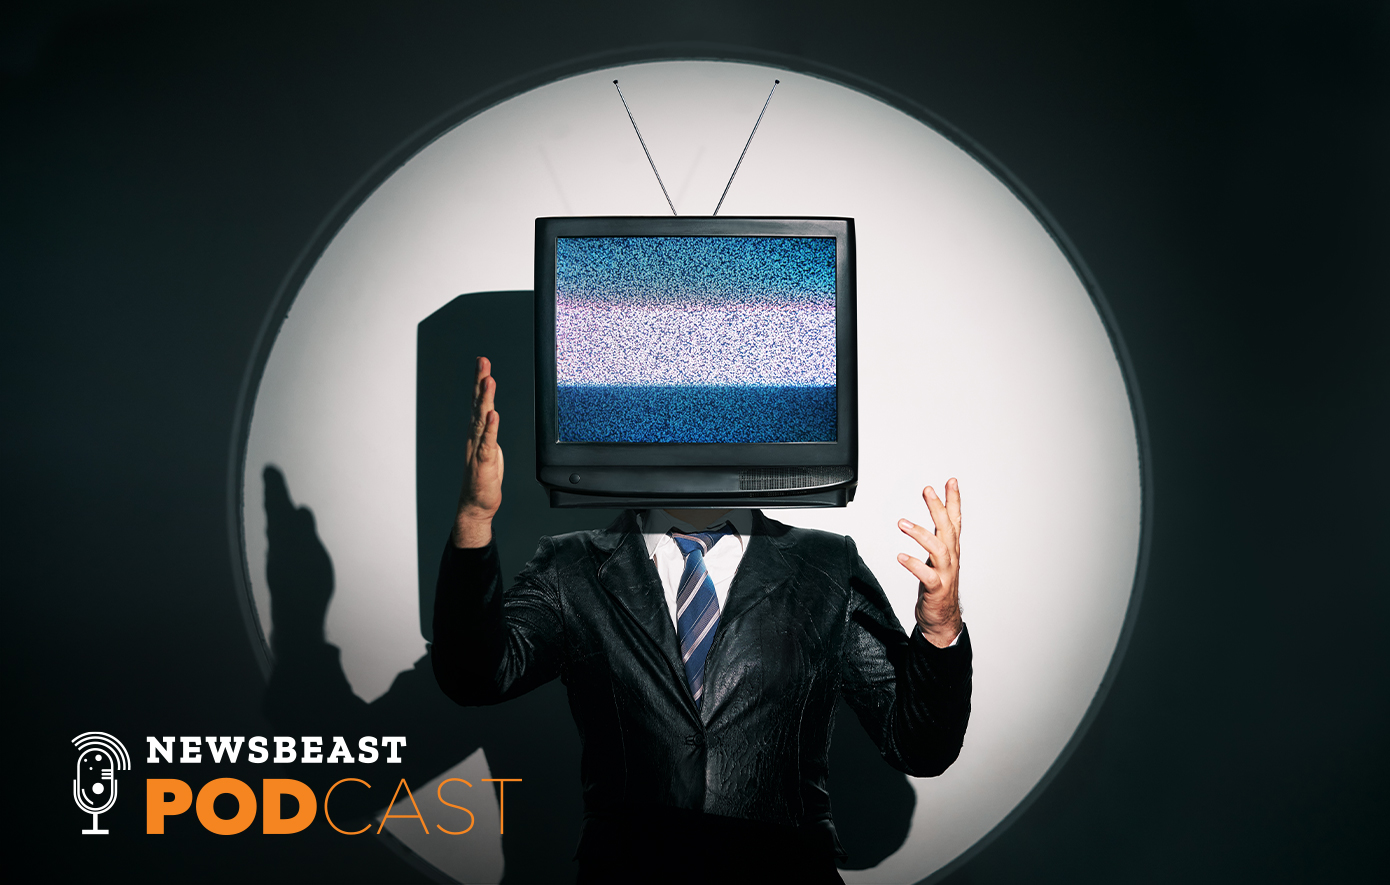 Β. Βαμβακάς: Η τηλεόραση δεν είναι πια το μοναδικό ισχυρό μέσο - Πλέον θα επιβιώσει με καινούργιο περιεχόμενο